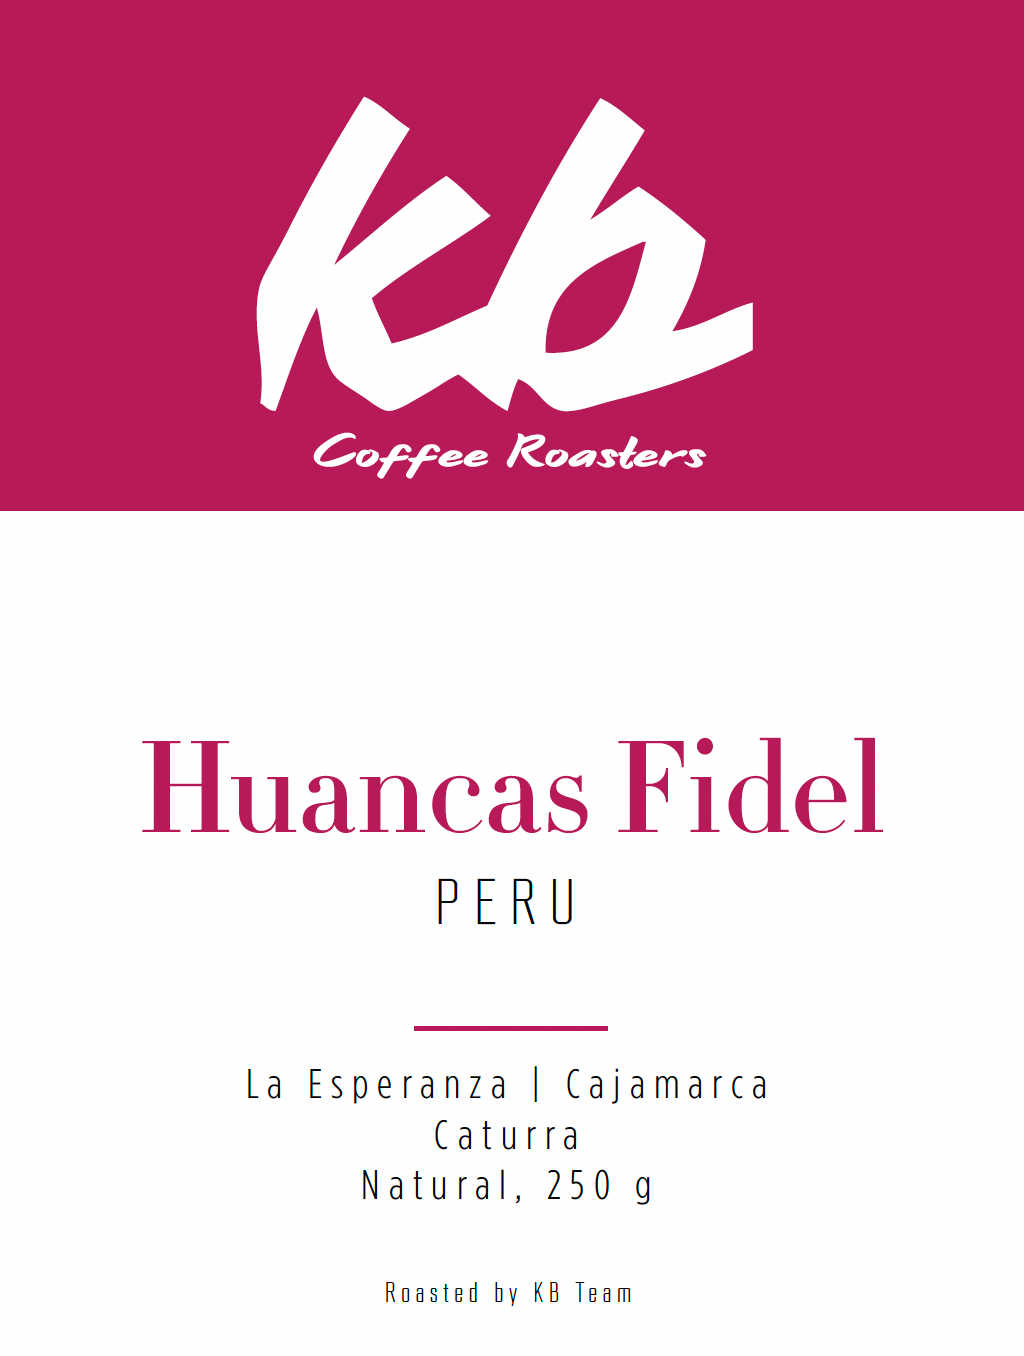 Peru - Huancas Fidel